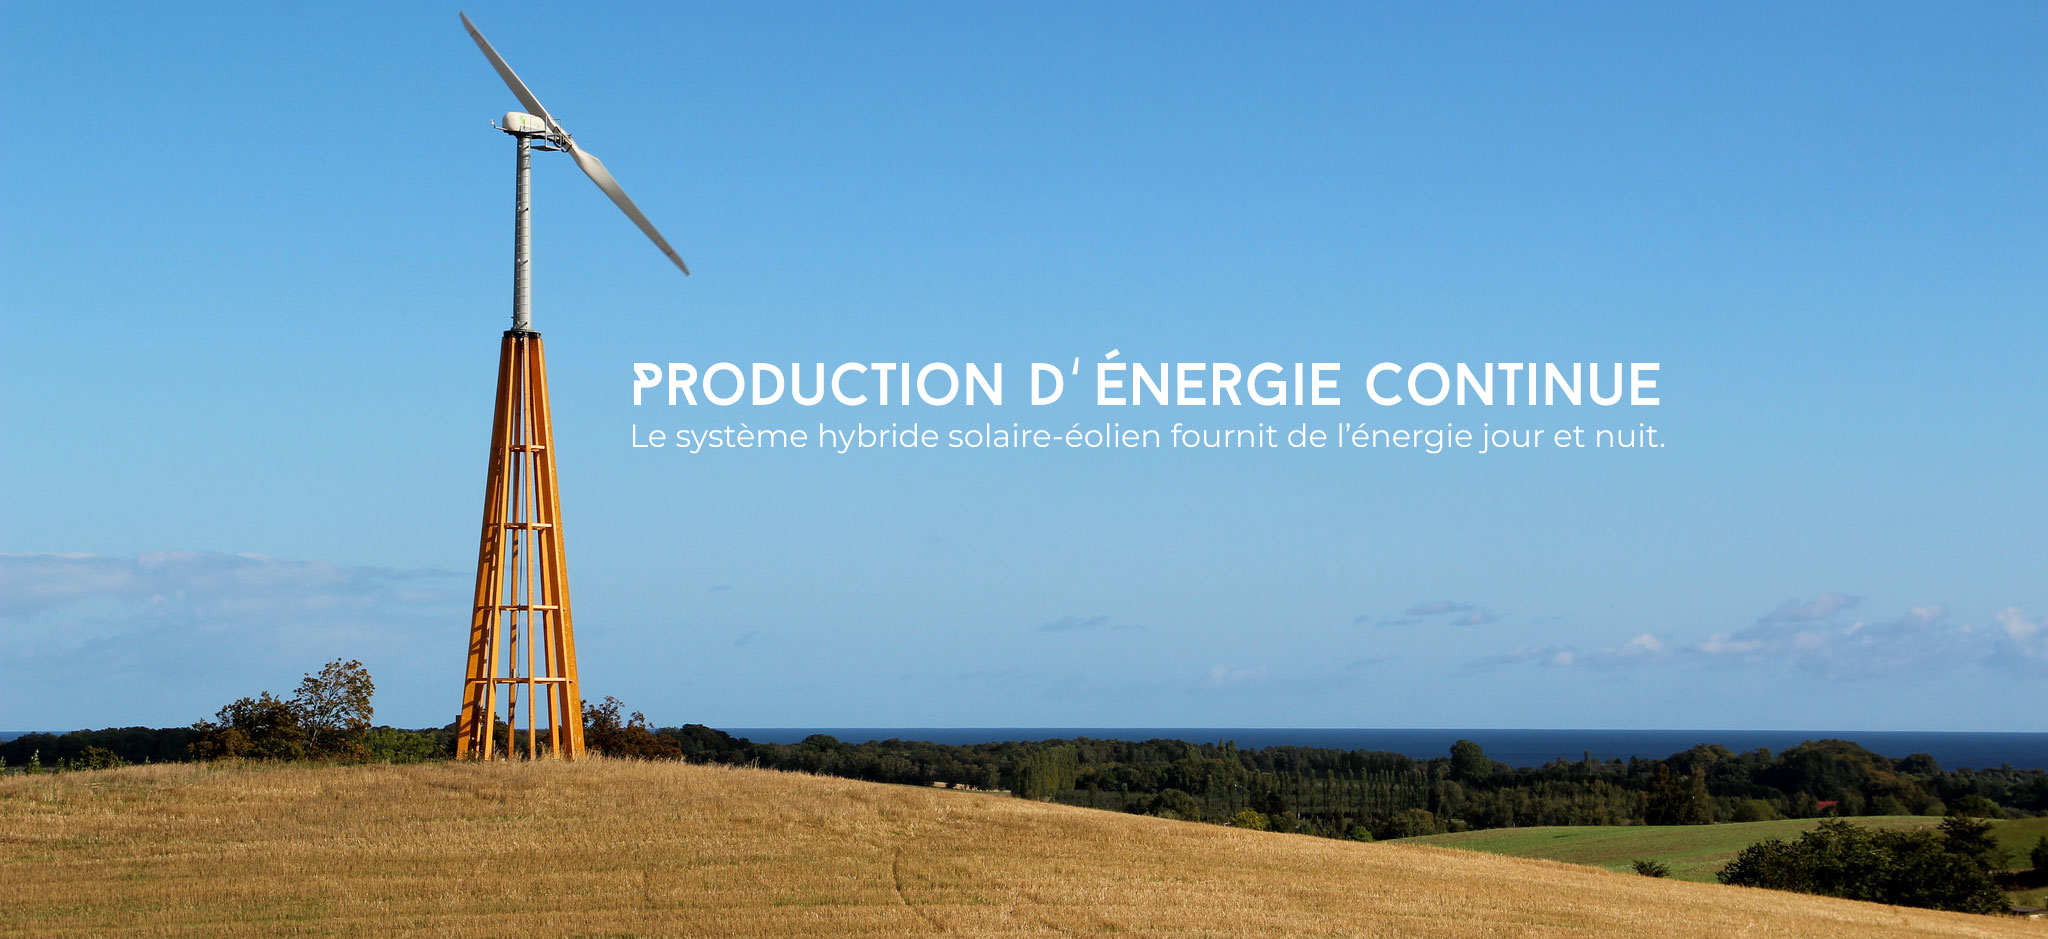 Production d'énergie continue. Le système hybide solaire-éolien fournit de l'énergie jour et nuit.